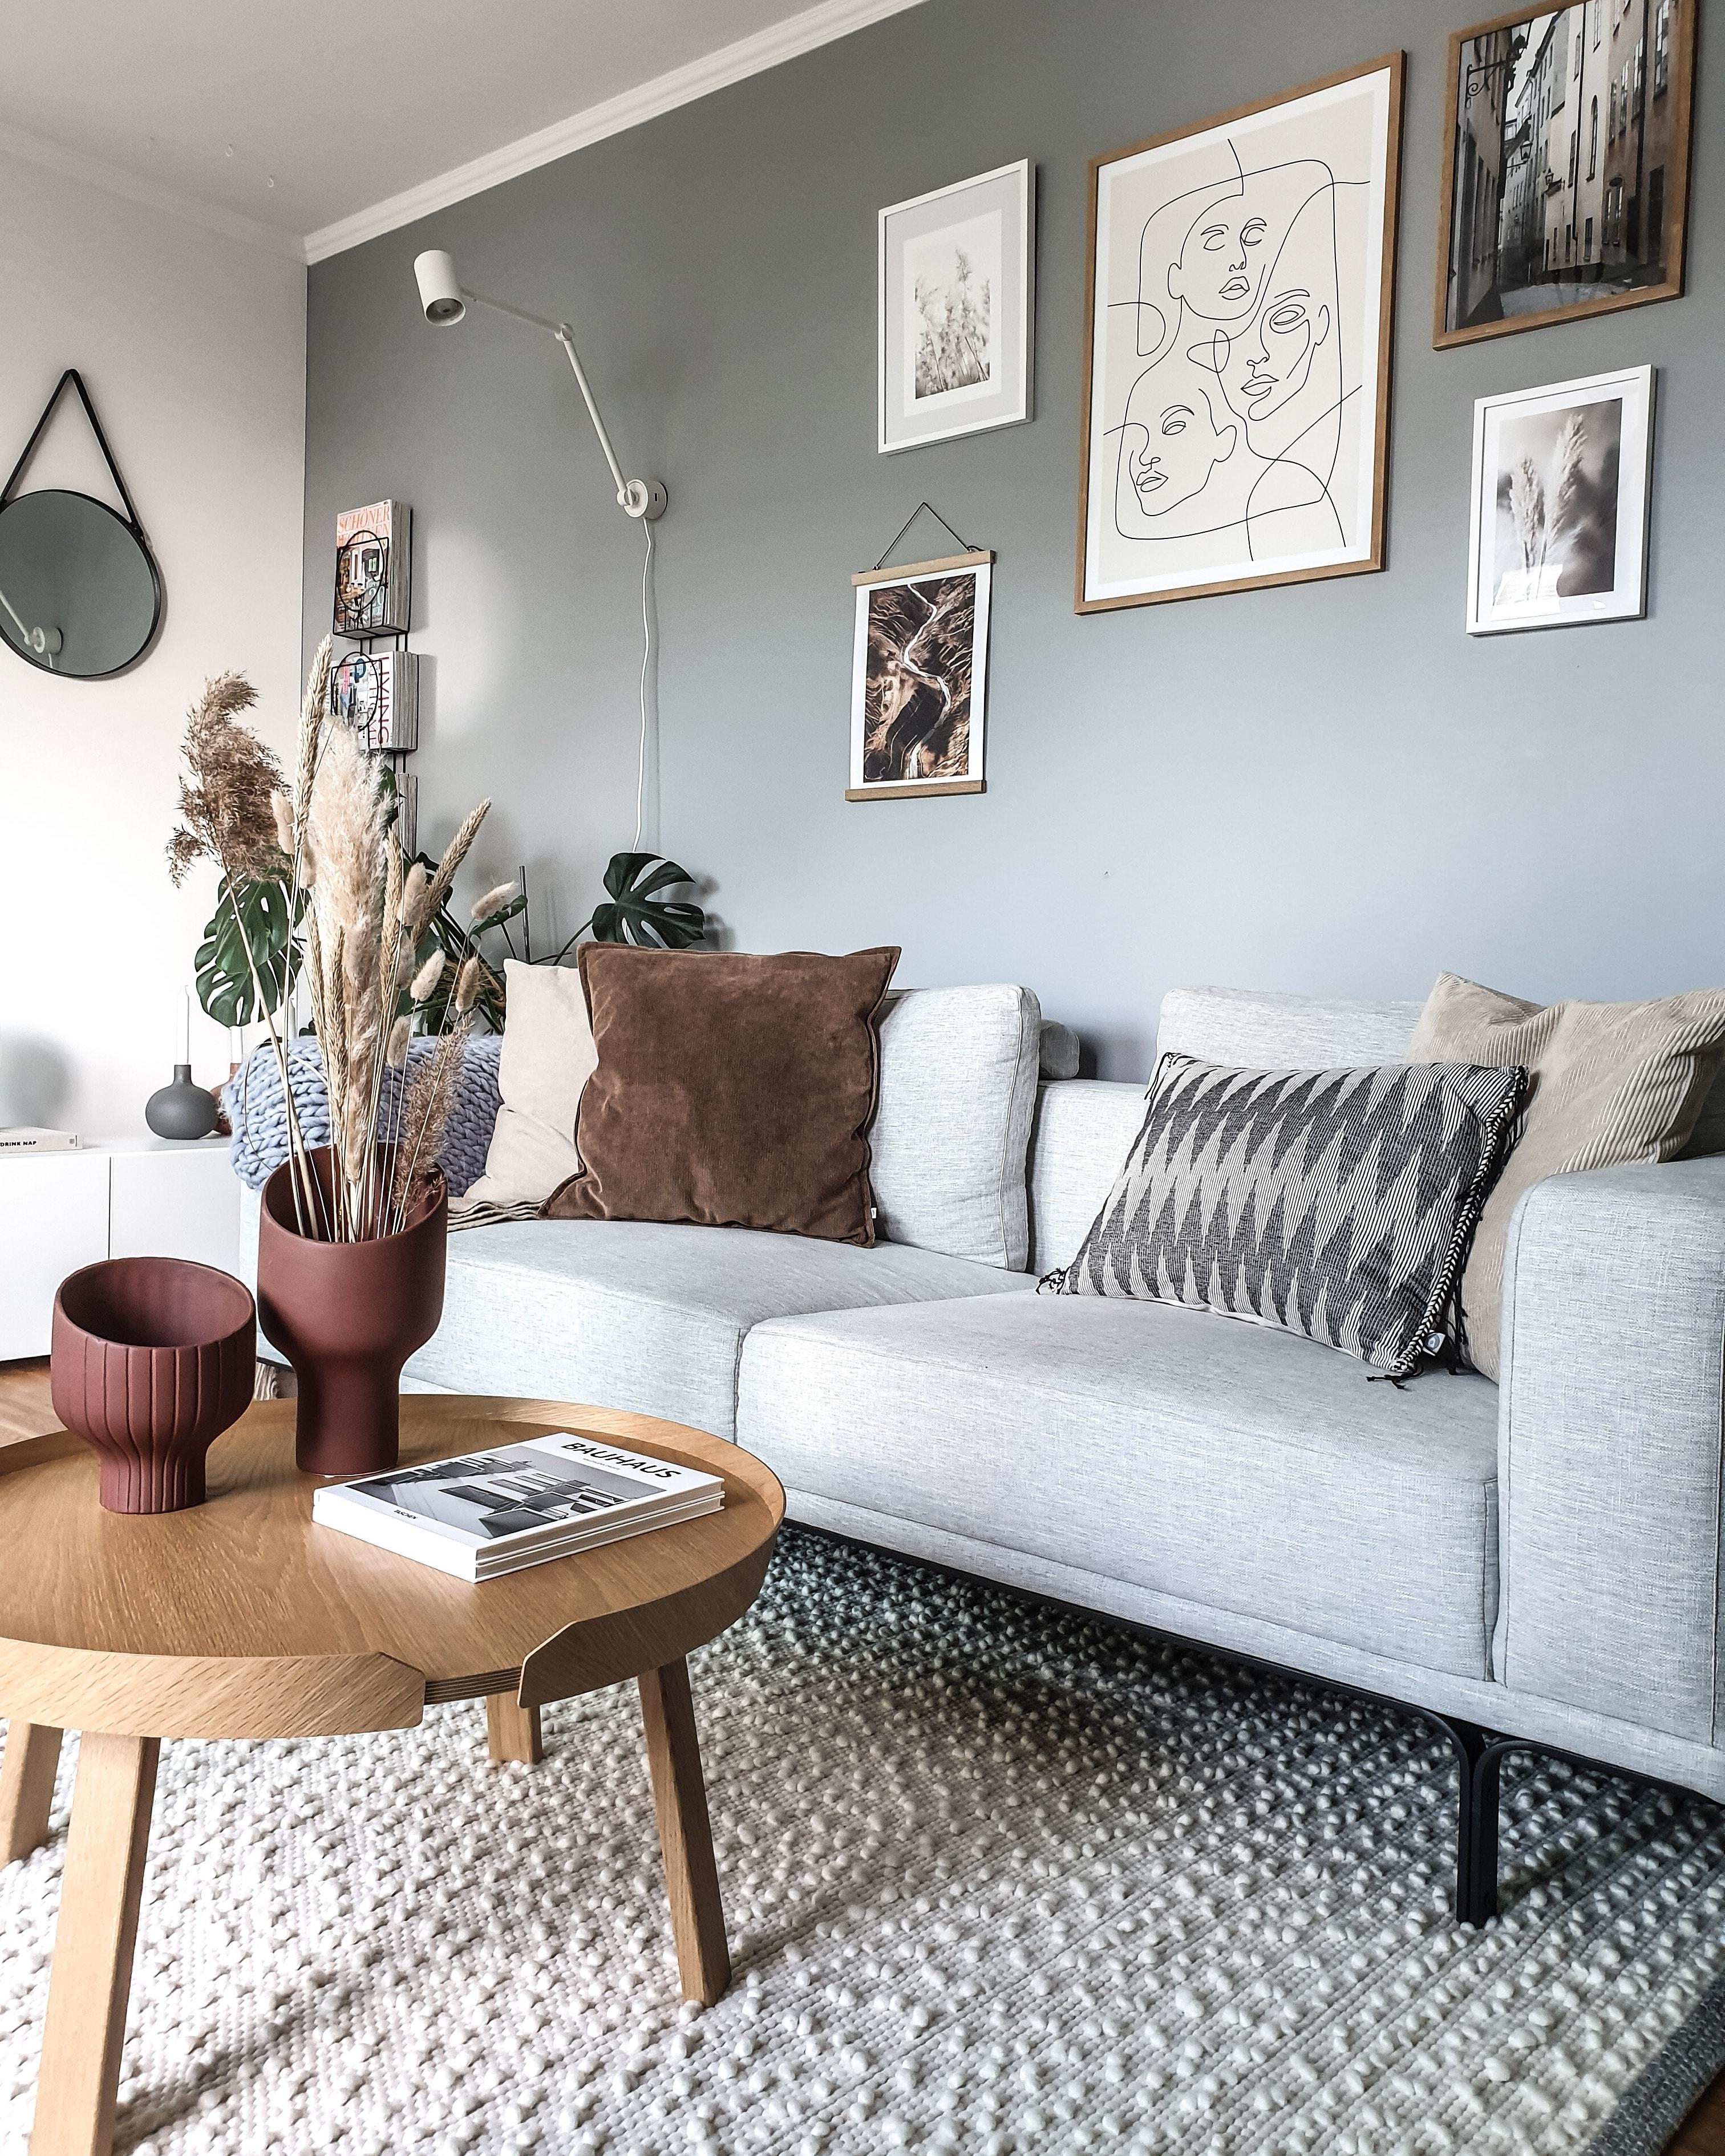 #skandinavischwohnen #danishdesign #hyggehome #elbankerinspo #couchstyle #meinzuhause #wohnzimmerinspo 